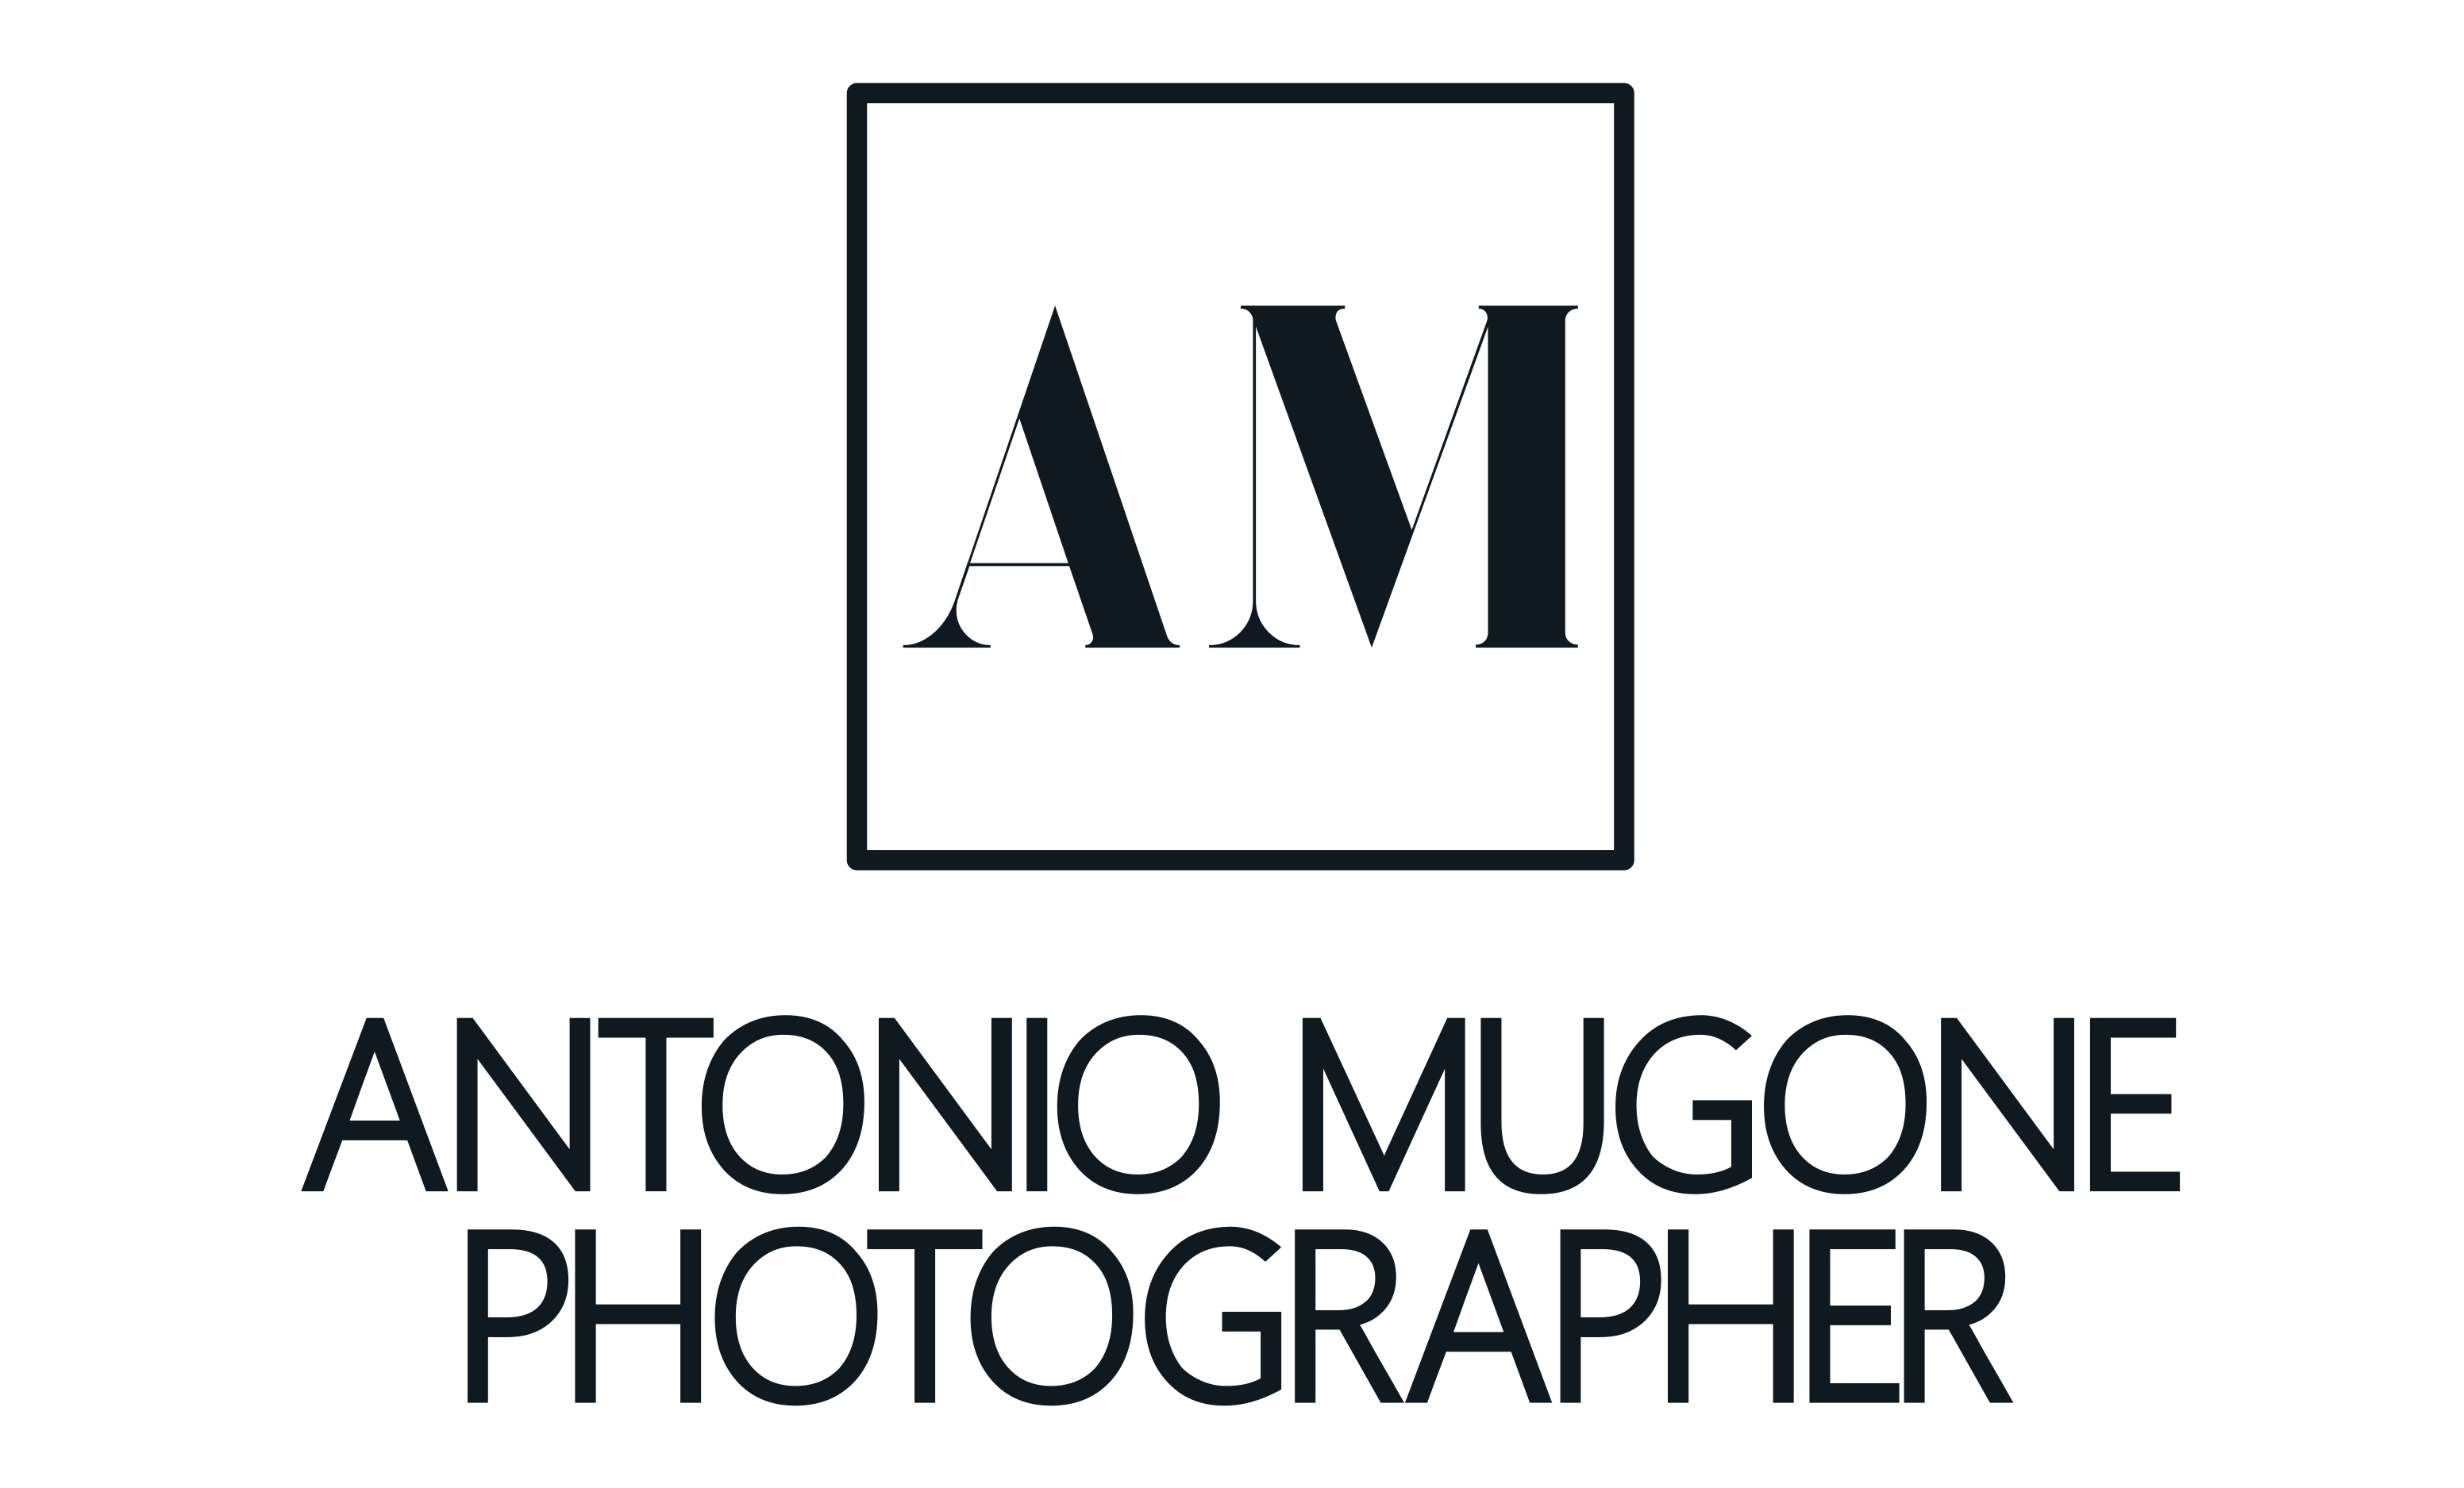 Antonio Mugone